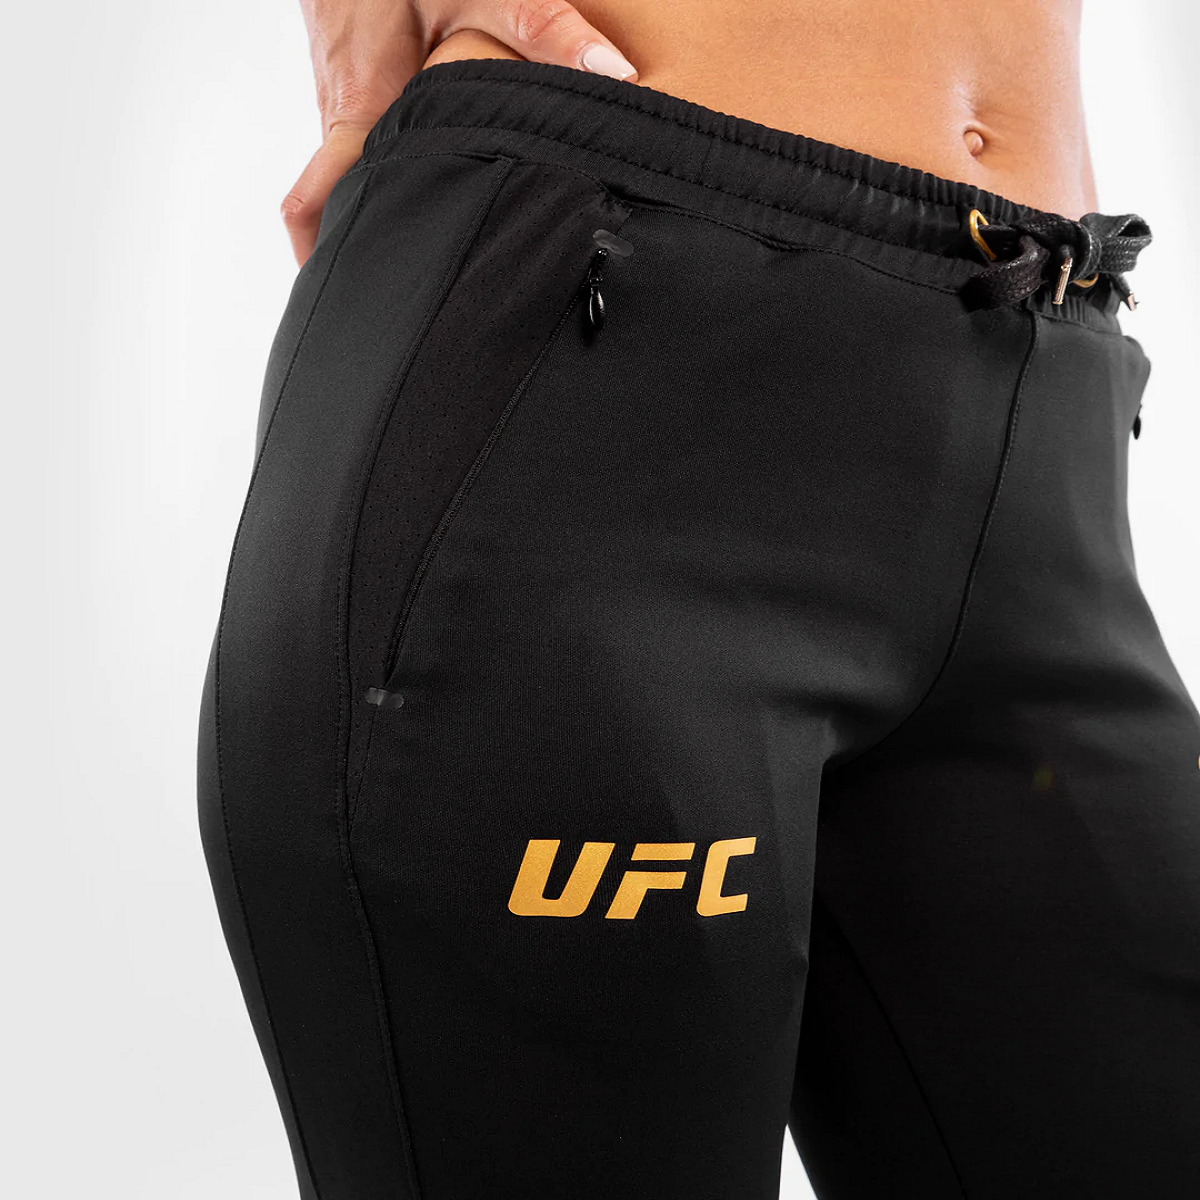 Venum Women's UFC Authentic Fight Night Walkout Sweatpants - Black/Gold Venum